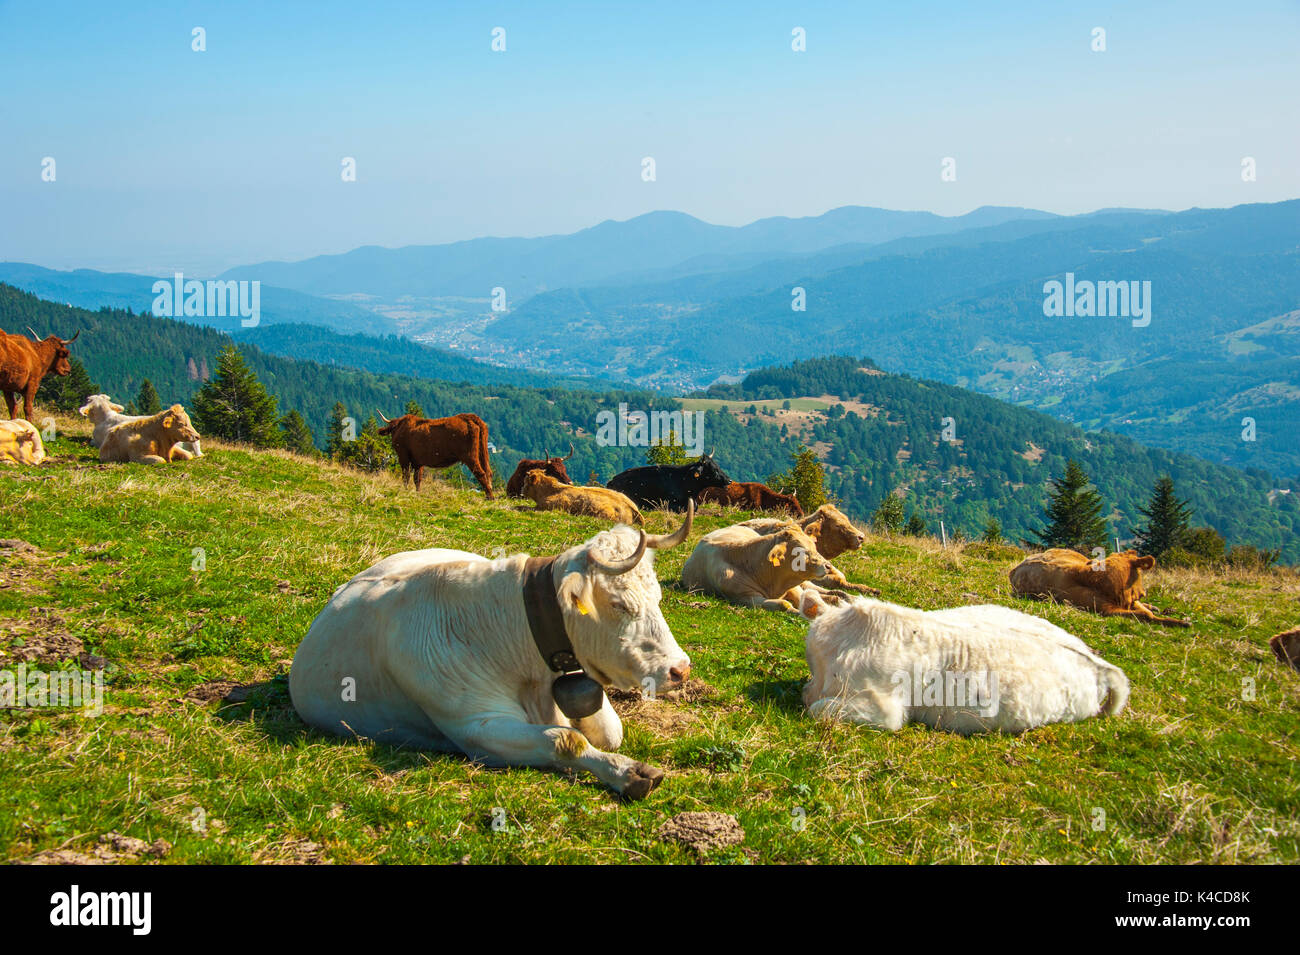 Vaches avec vue sur la vallée de Munster, origine du célèbre fromage Munster, célèbre produit régional d'Alsace, France Banque D'Images